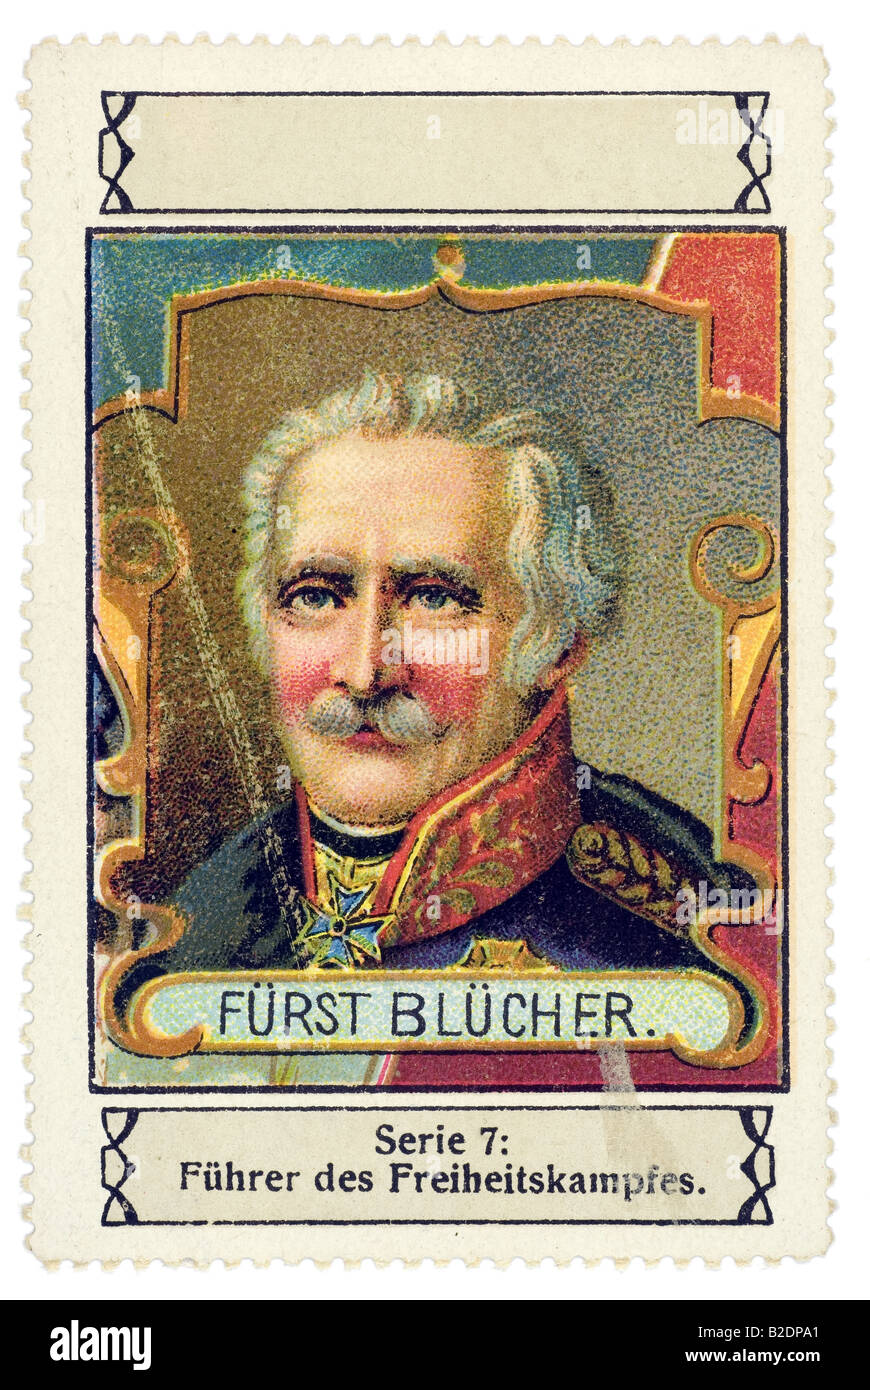 trading stamp Fürst Blücher Serie 7 Führer des Freiheitskampfes Stock Photo